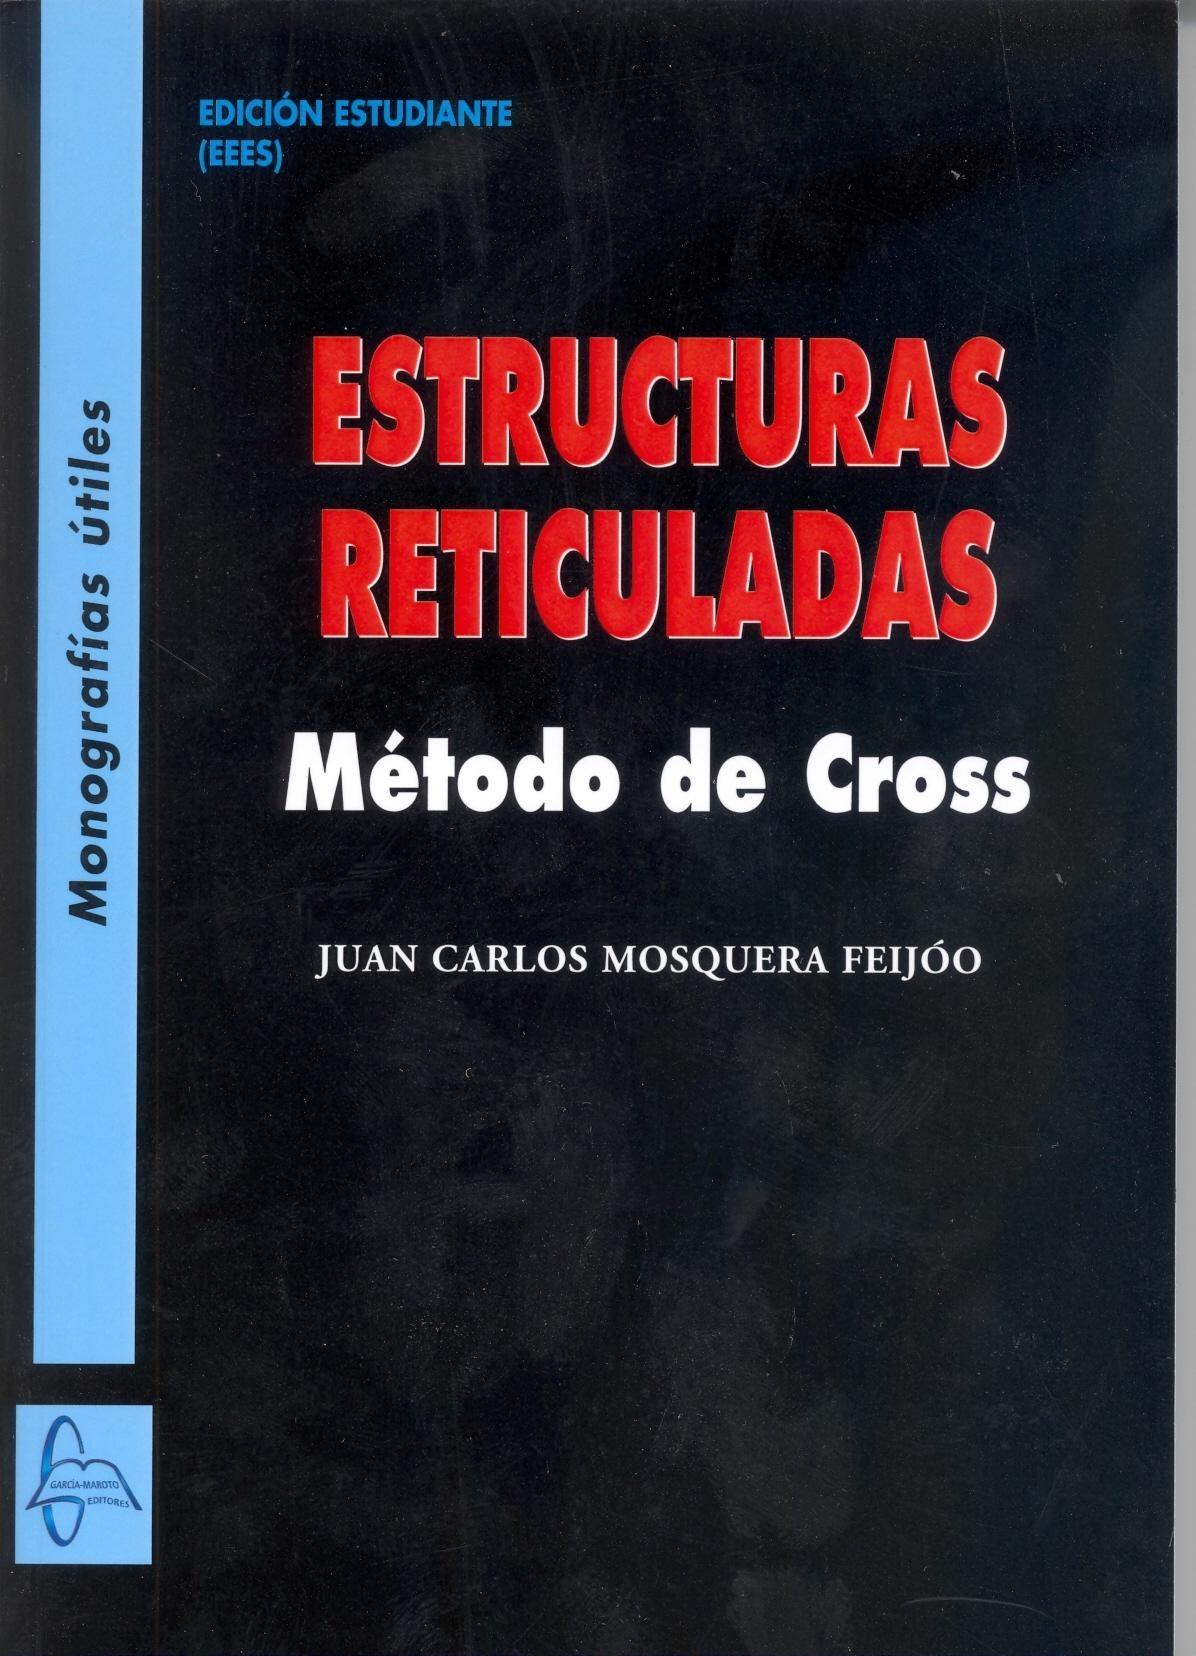 ESTRUCTURAS RETICULADAS "MÉTODO DE CROSS"